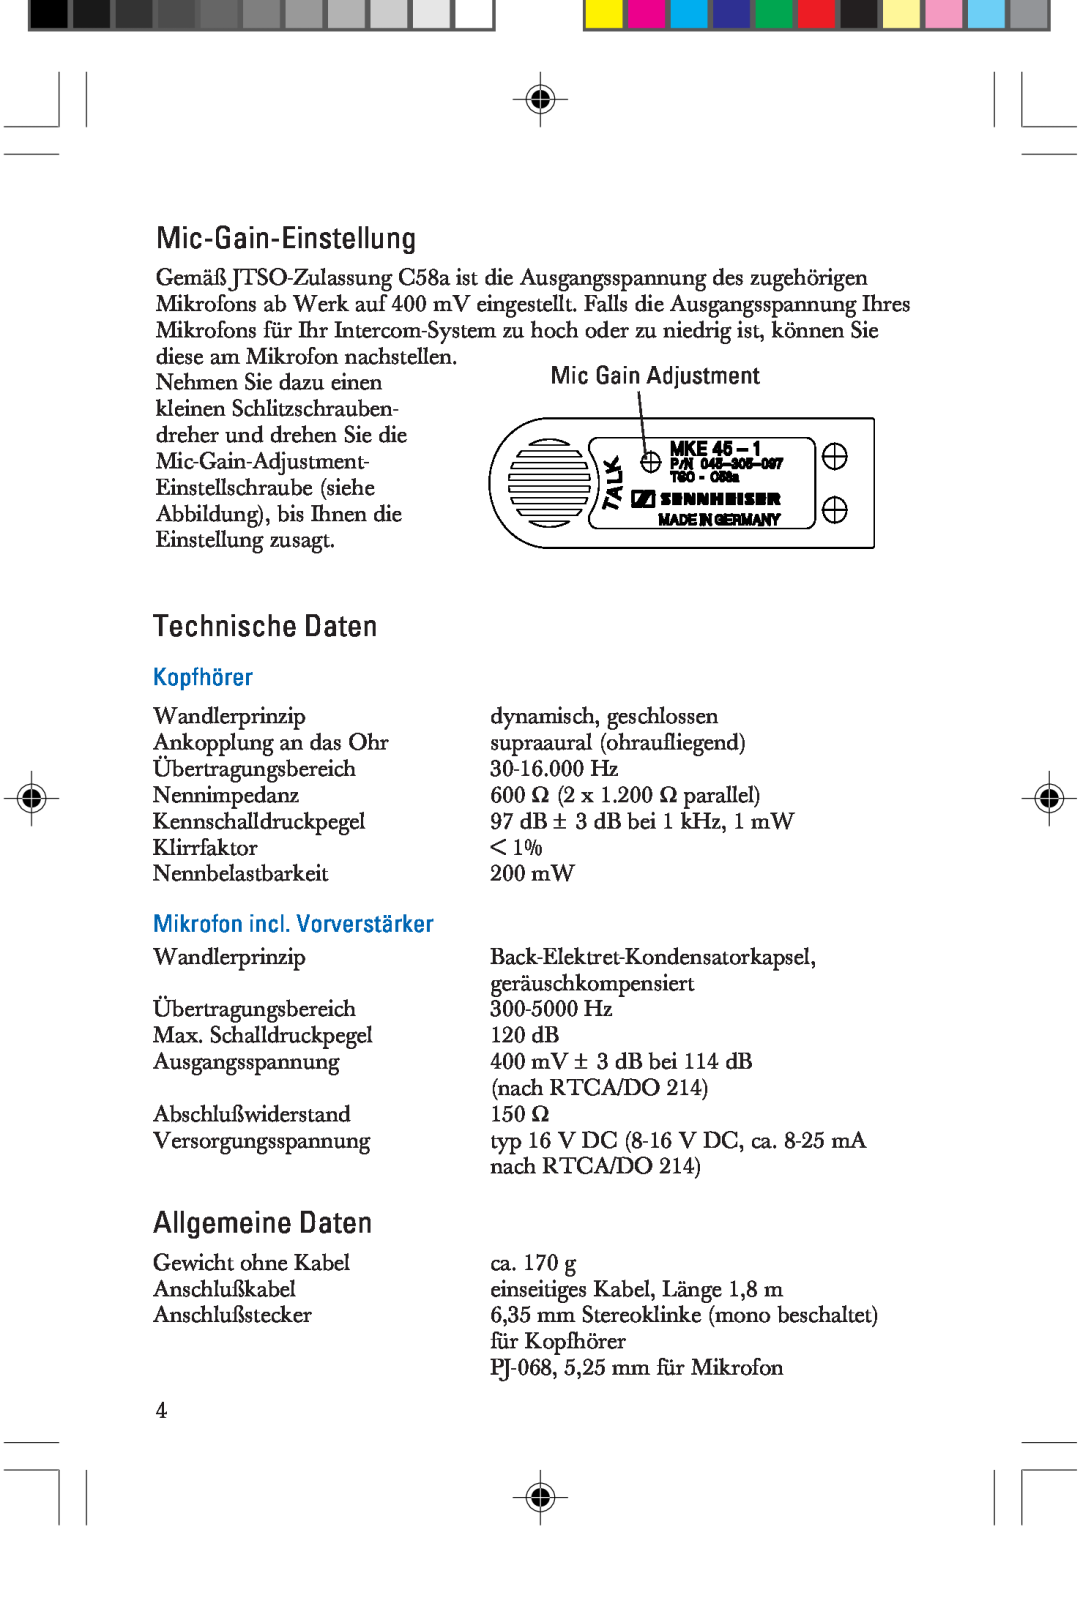 Sennheiser HME 25-KA-2 Mic-Gain-Einstellung, Technische Daten, Allgemeine Daten, Kopfhörer, Mikrofon incl. Vorverstärker 